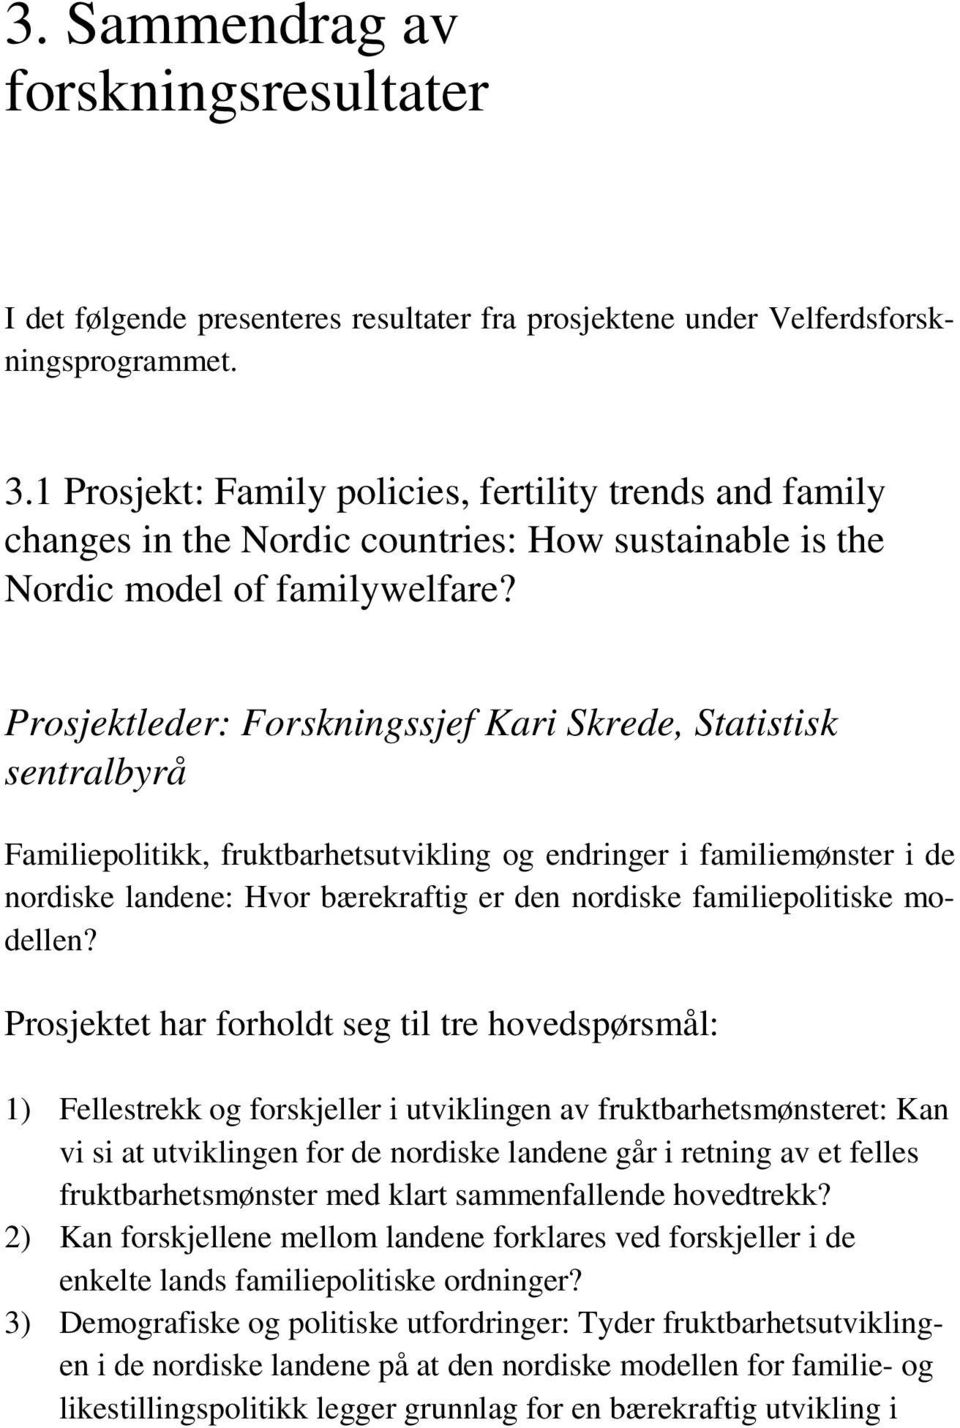 Prosjektleder: Forskningssjef Kari Skrede, Statistisk sentralbyrå Familiepolitikk, fruktbarhetsutvikling og endringer i familiemønster i de nordiske landene: Hvor bærekraftig er den nordiske